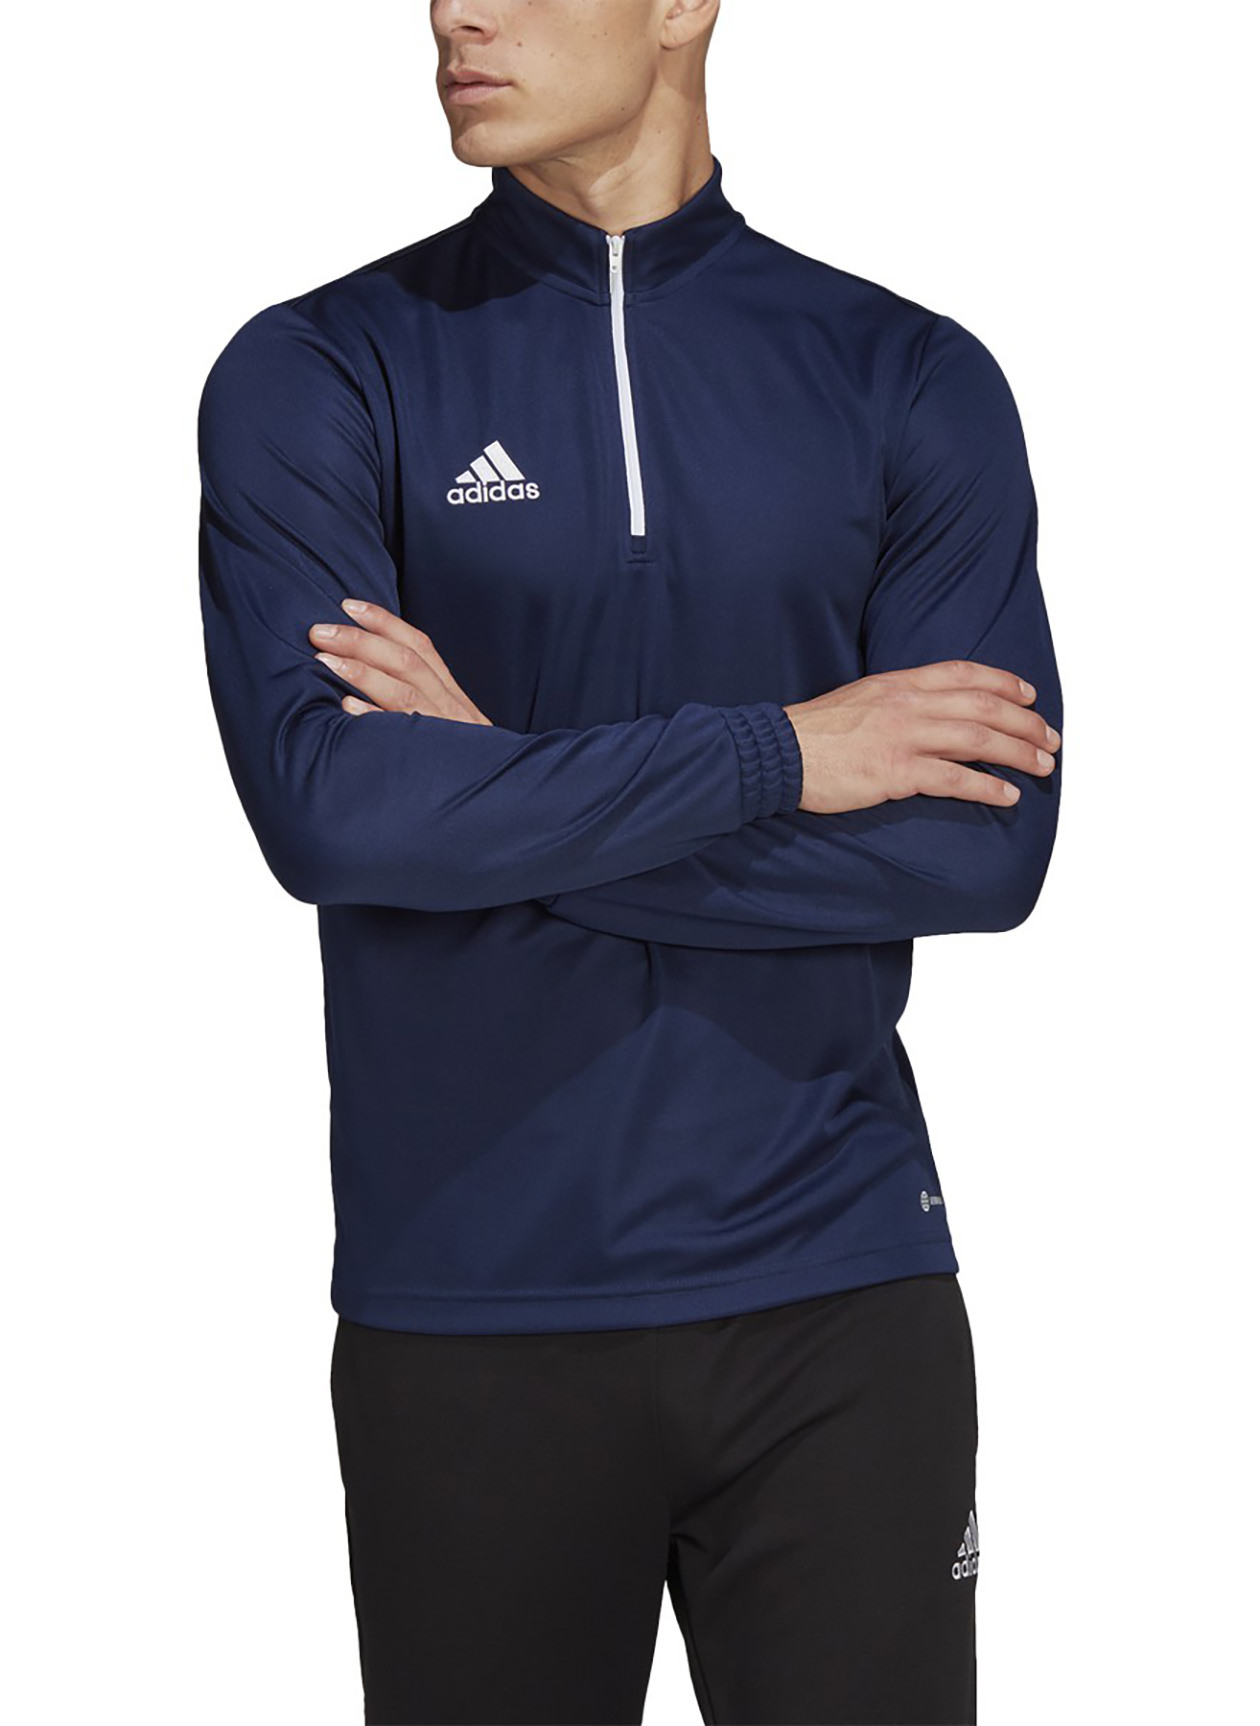 Adidas Men's Team Navy Blue 2 Entrada22 Training Top | Custom Pullover